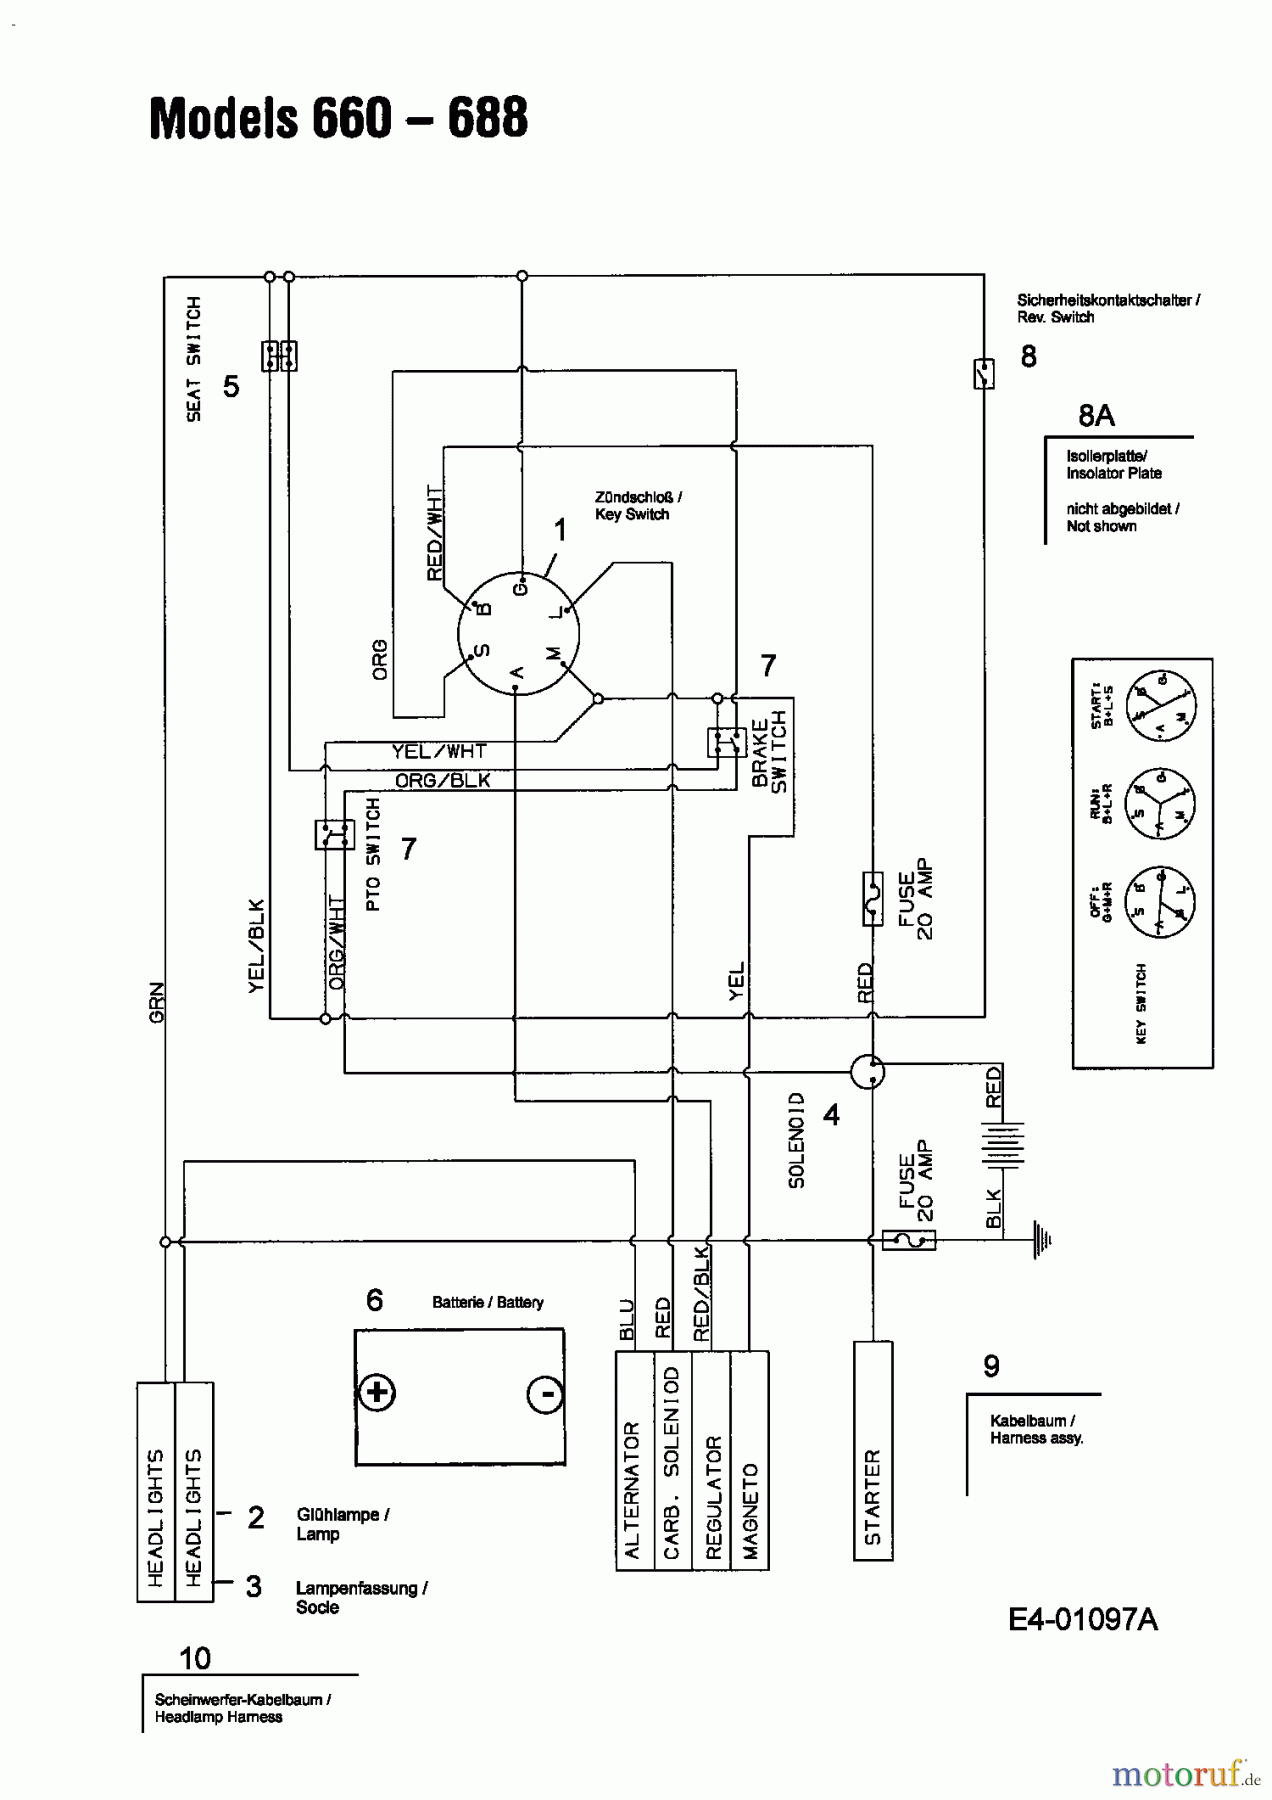  MTD Lawn tractors RS 115/96 13B1662F600  (2004) Wiring diagram